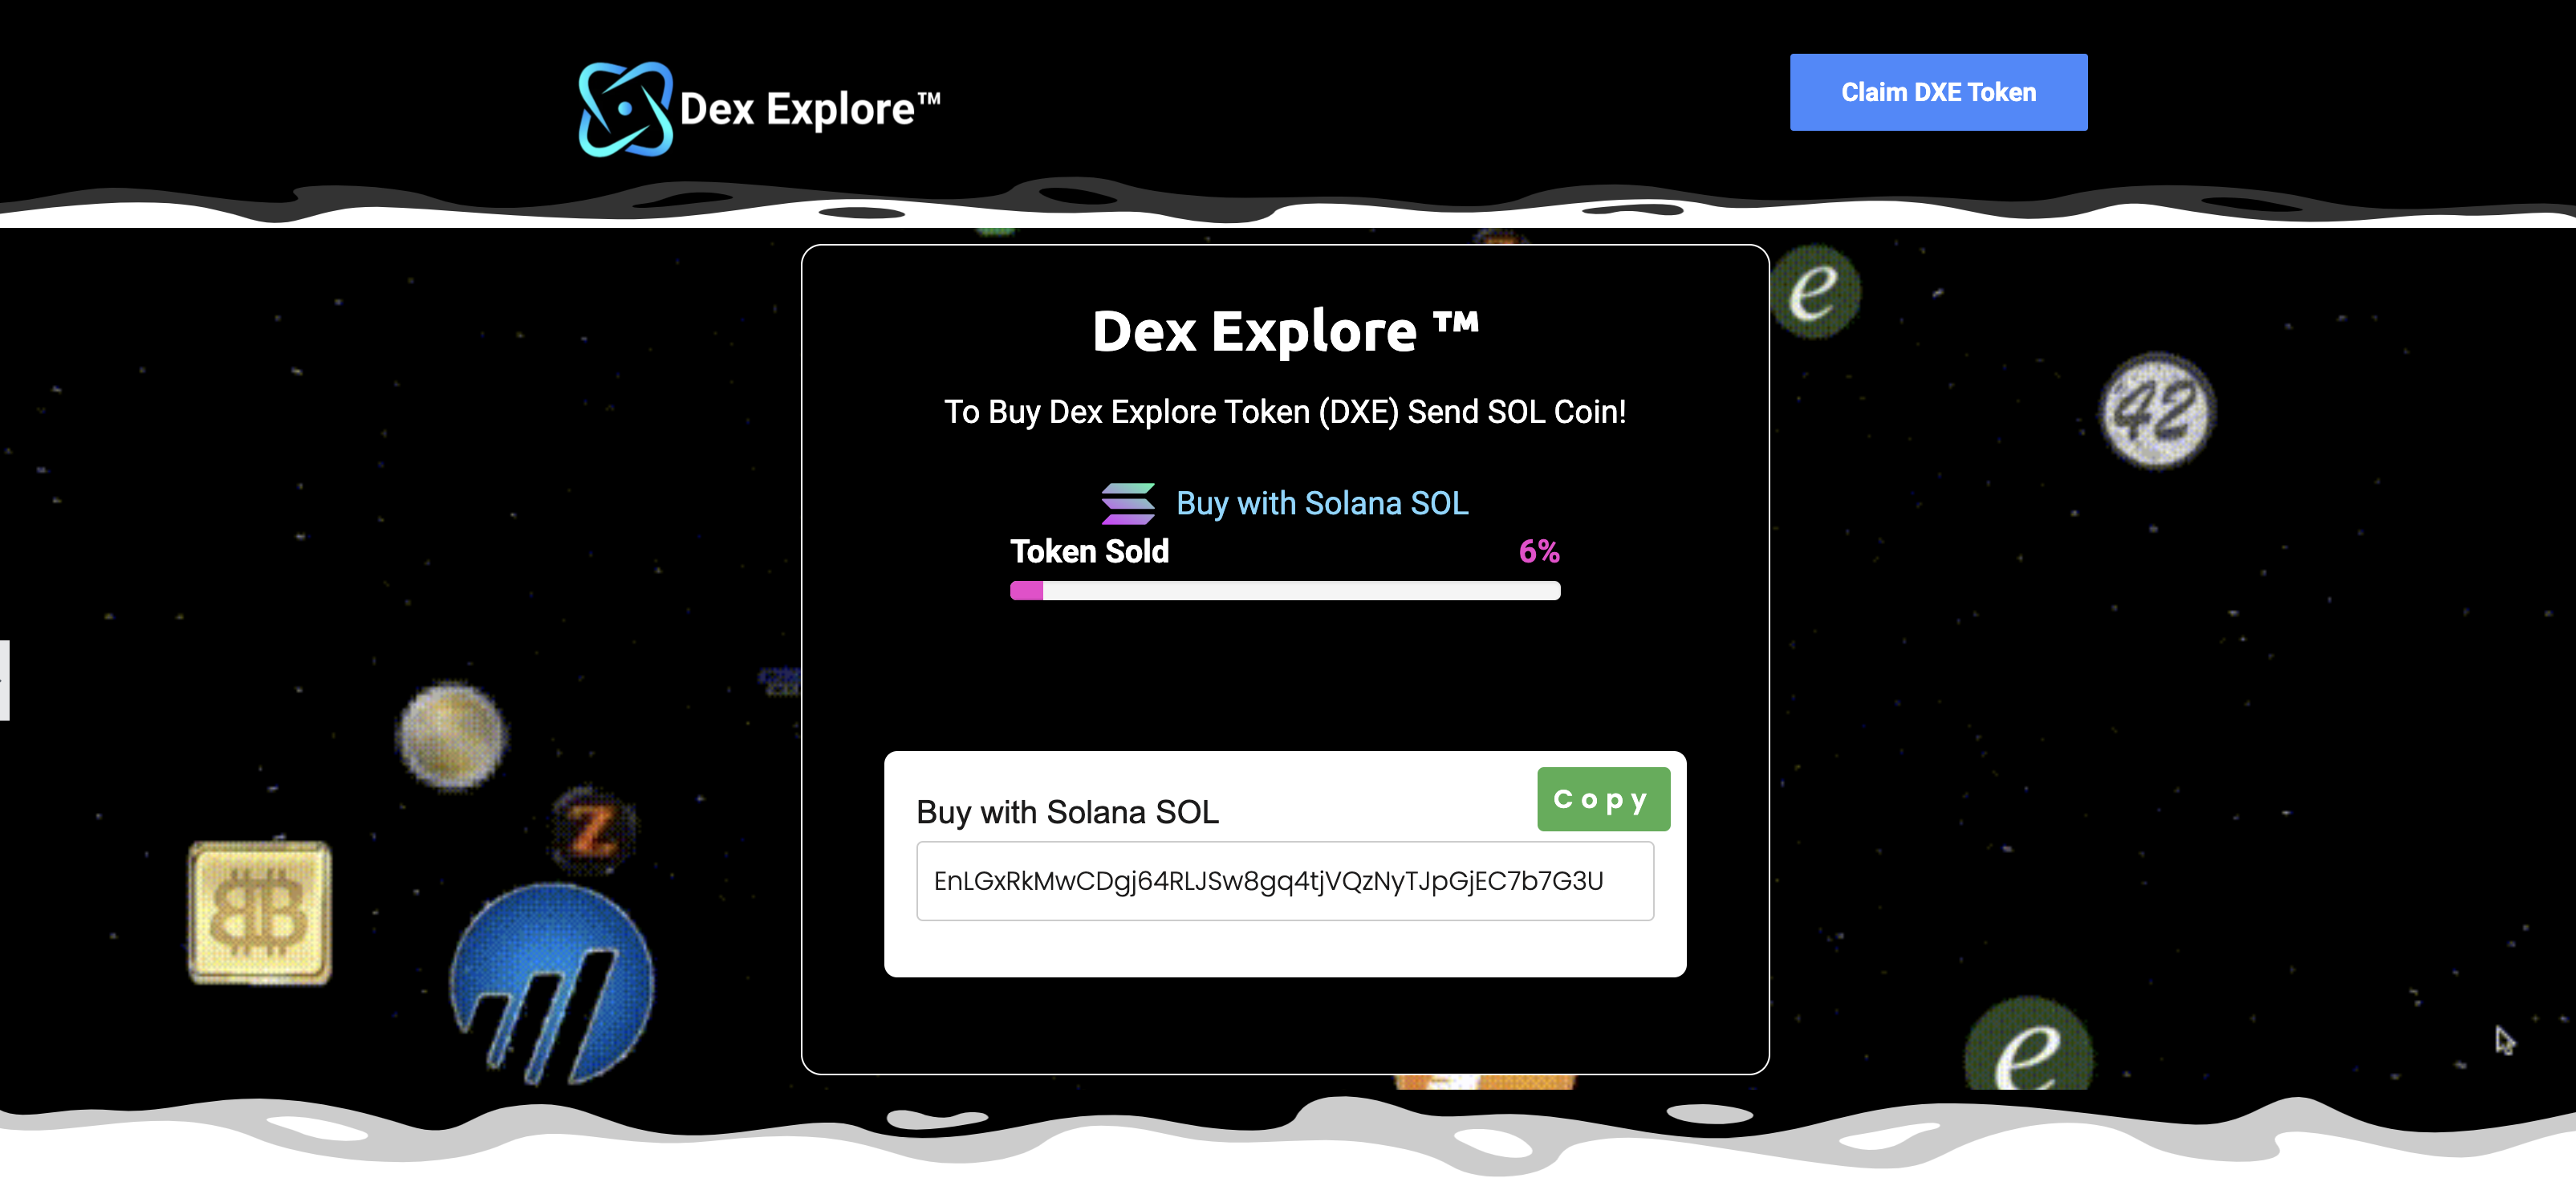 Dex Explore Dex Explore